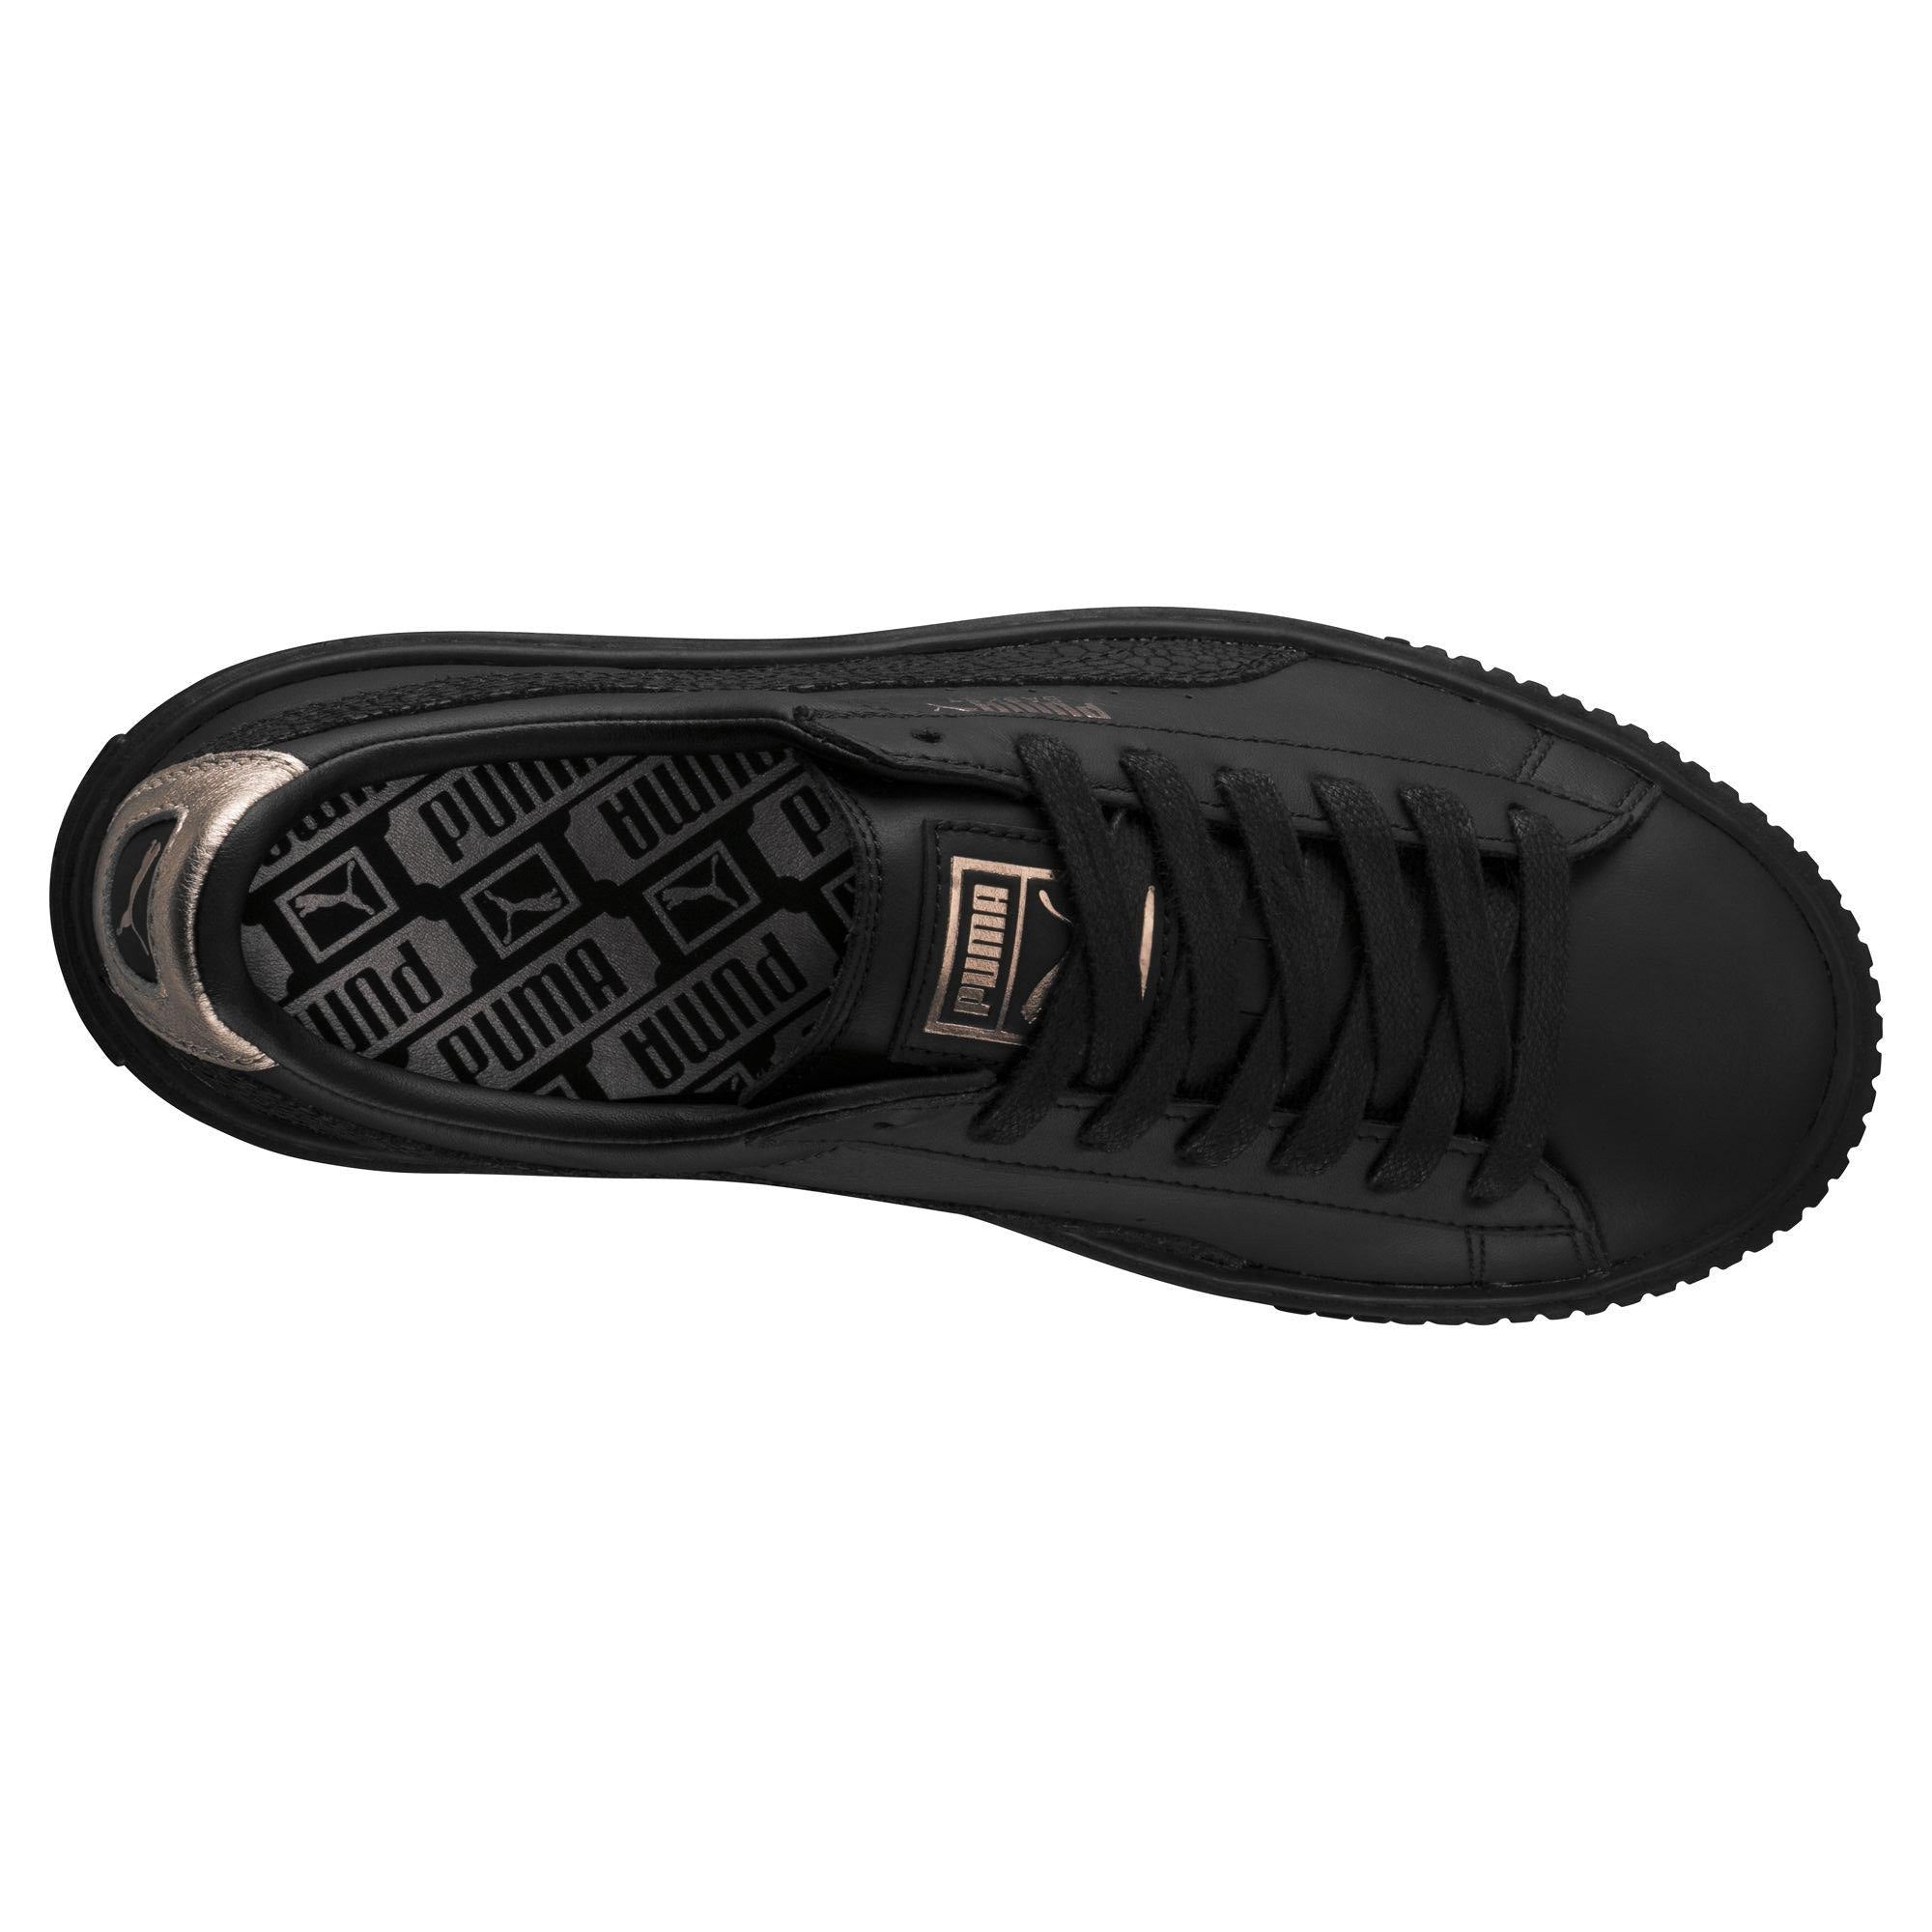 Puma scarpa sneakers da donna con zeppa Basket Euphoria RG 366814 01 nero